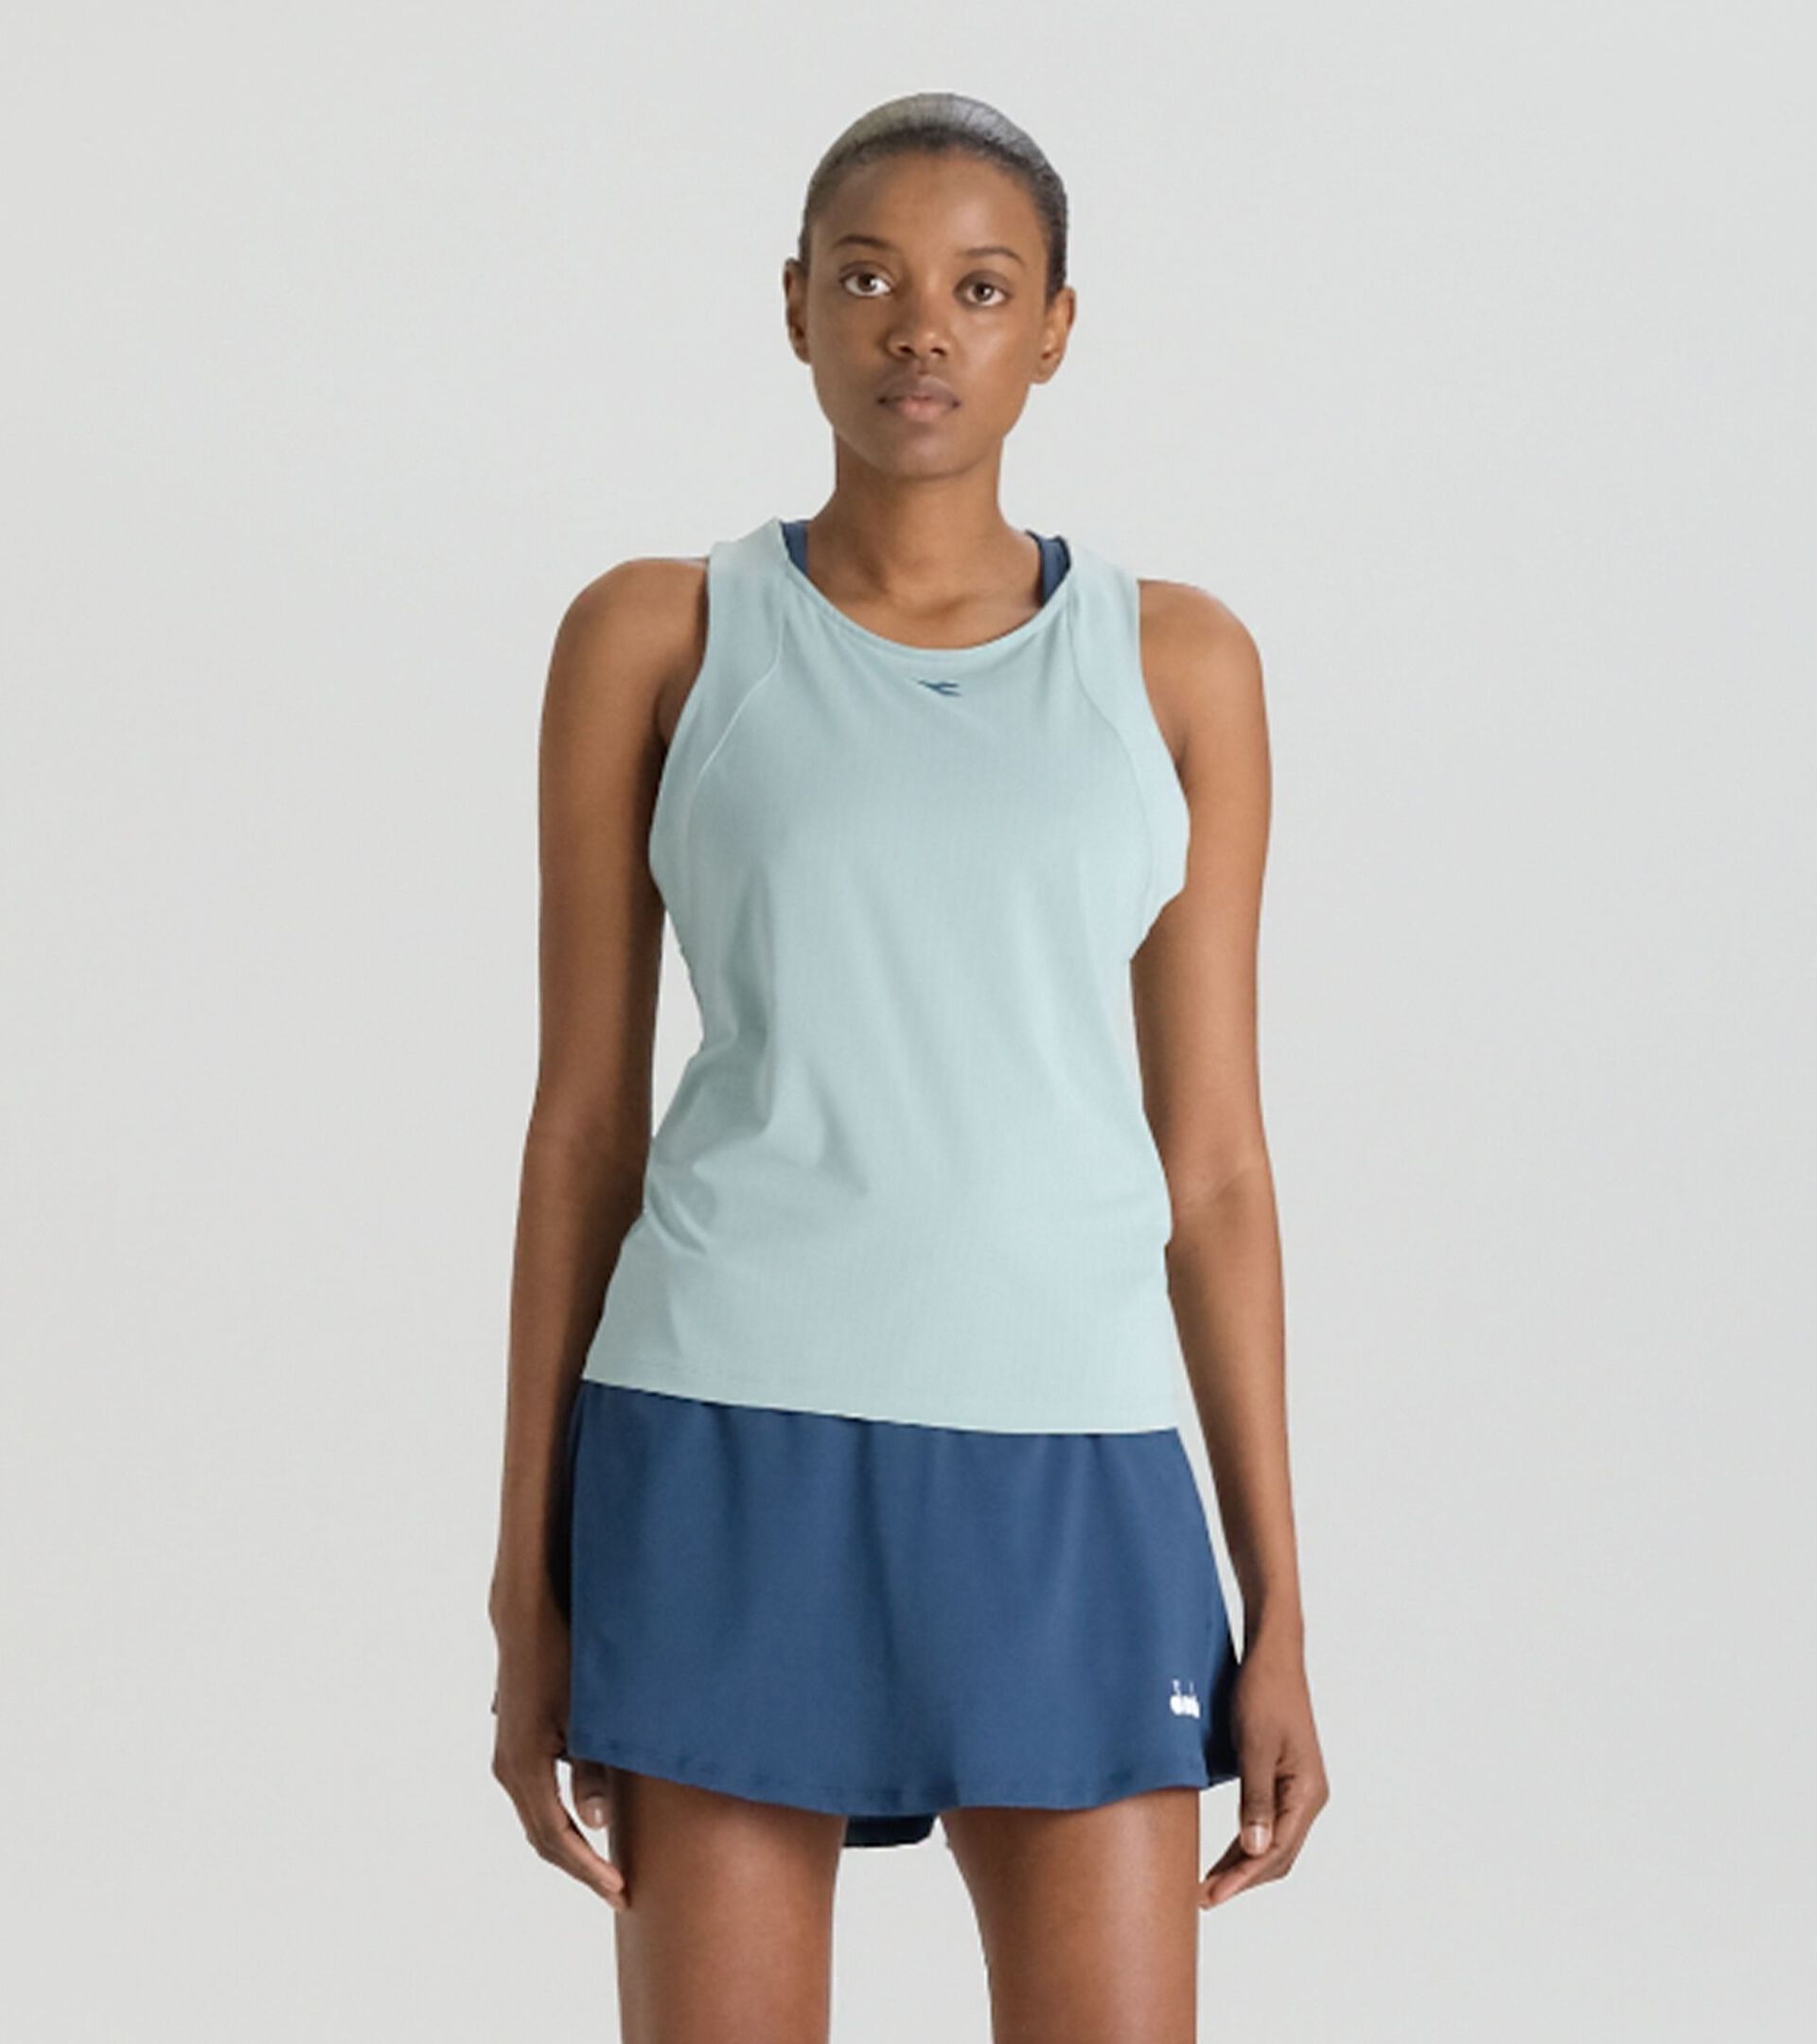 Camiseta sin mangas de tenis con espalda estilo nadadora - Competición - Mujer
 L. TANK ICON OLAS SPRAY - Diadora